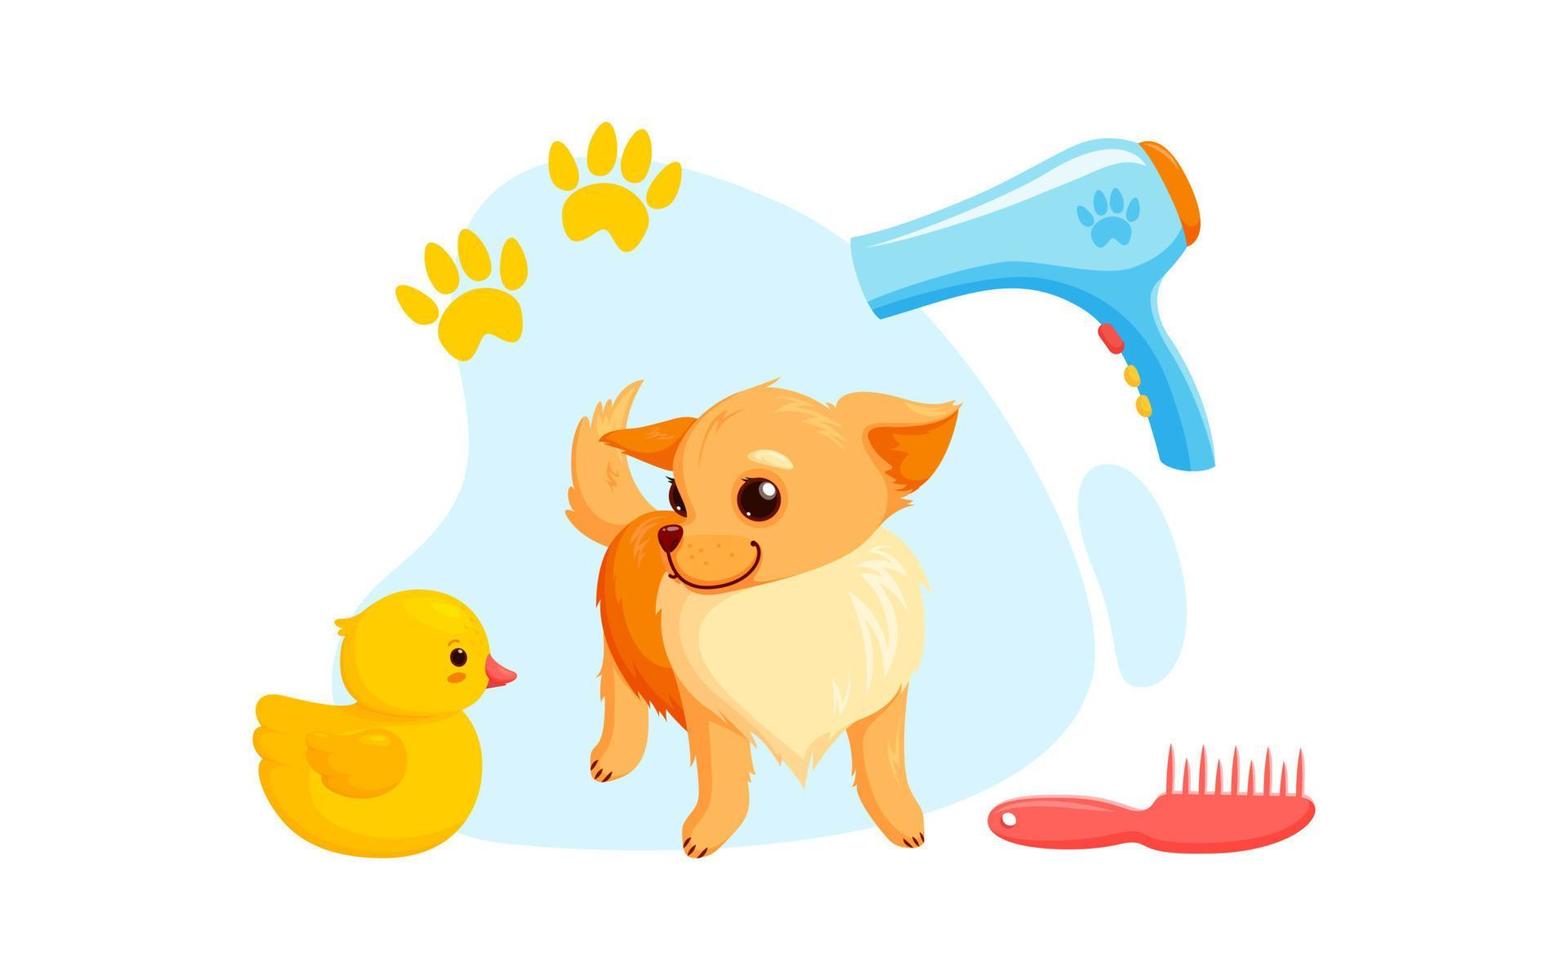 hond uiterlijke verzorging met droger, kammen en rubber eenden. speels chihuahua puppy in uiterlijke verzorging onderhoud. vector illustratie